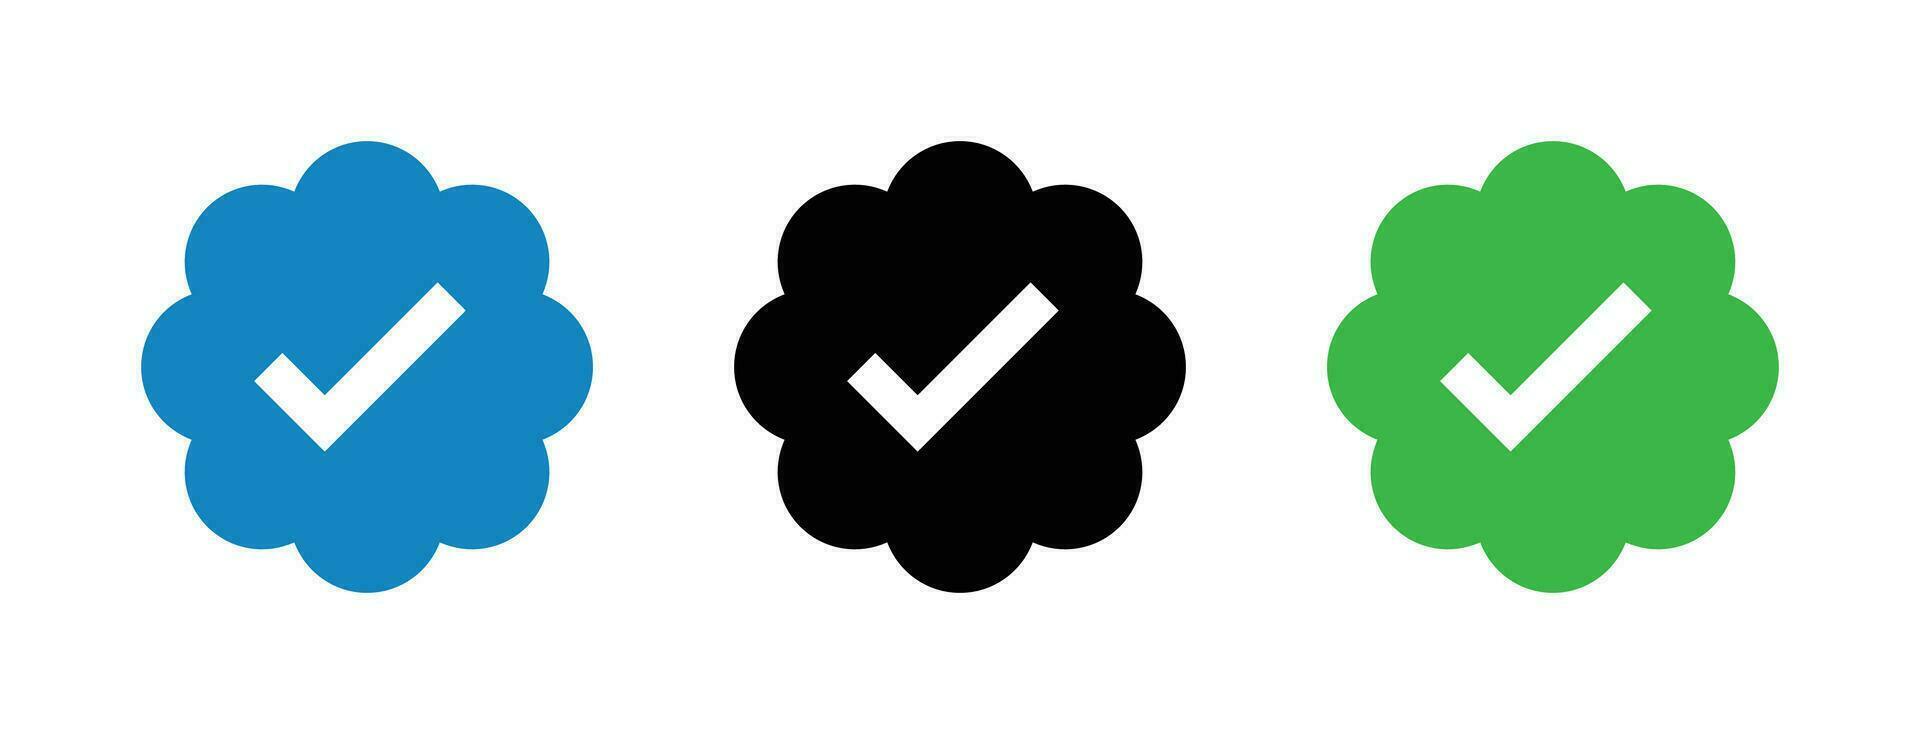 x verificado crachá ícones conjunto - social meios de comunicação verificação símbolos vetor